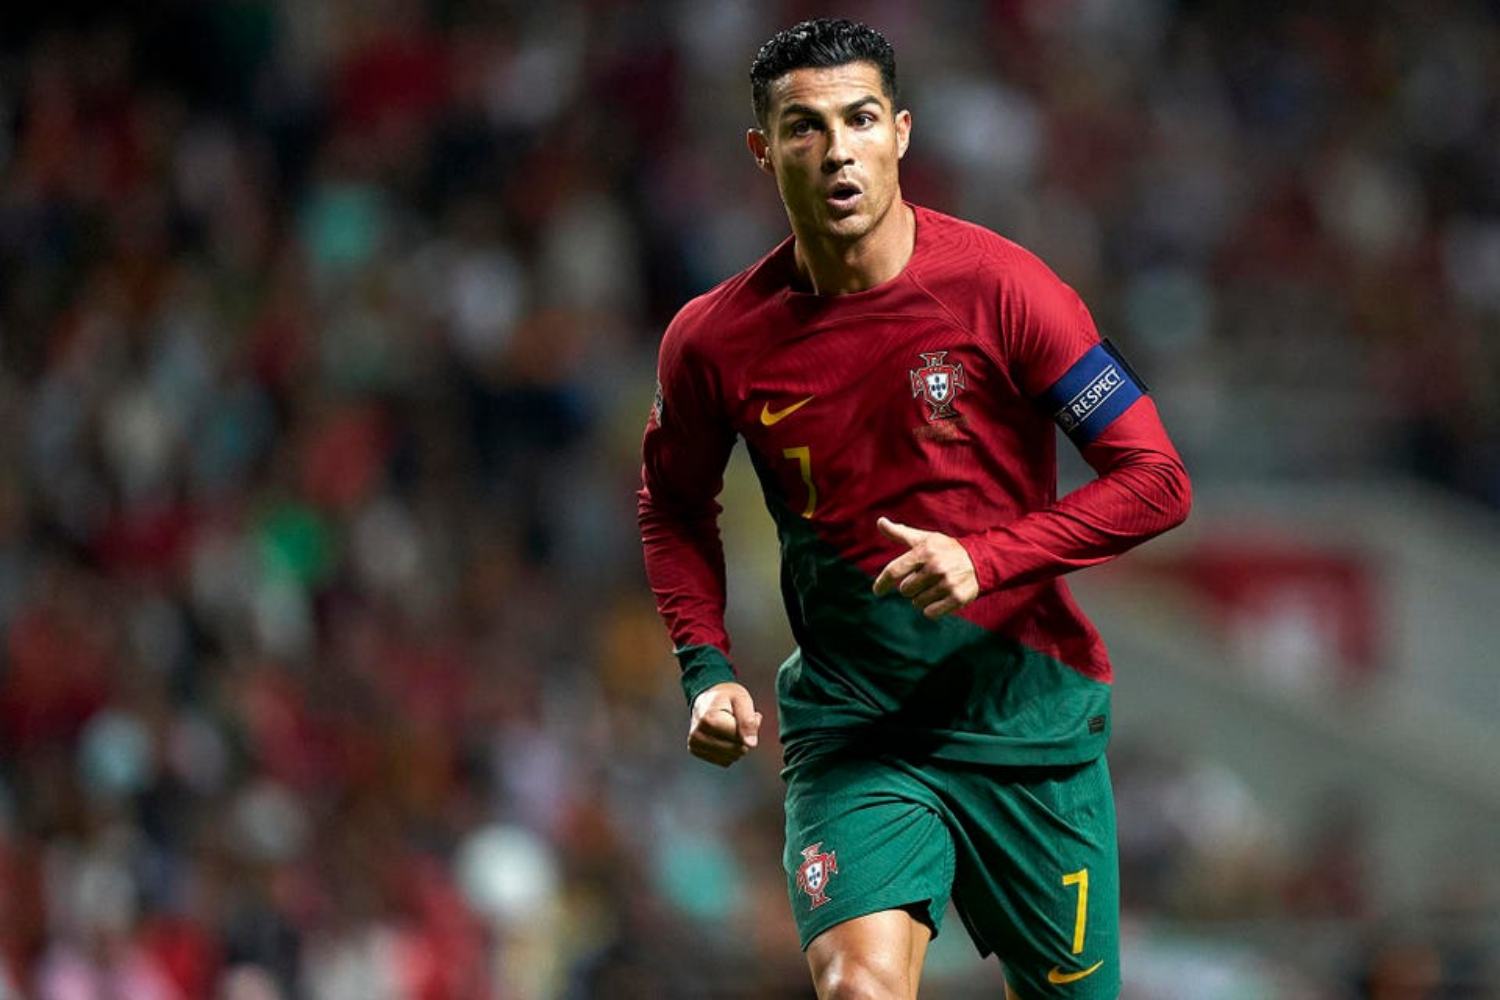 Quantos euros recebe o vencedor do Mundial de Futebol 2022? - Forbes  Portugal